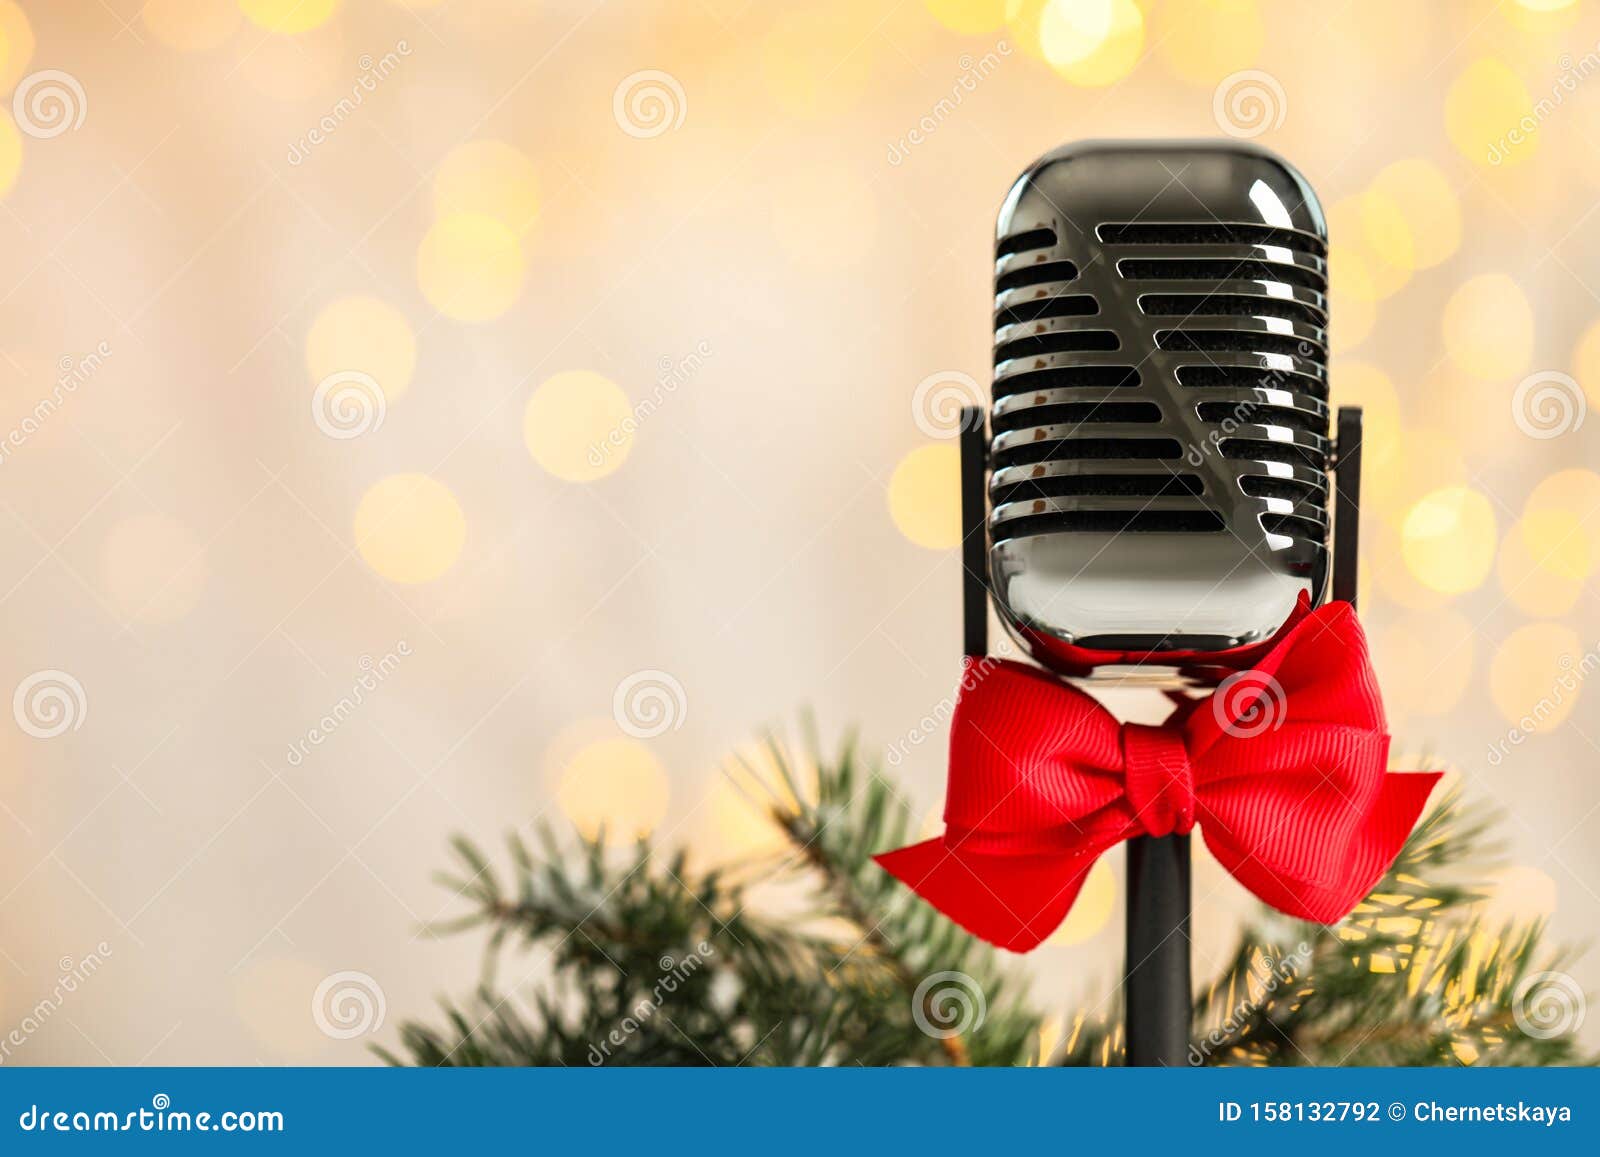 Microphone vàng và tuyết nhánh sẽ tạo nên một không khí Giáng sinh vô cùng lãng mạn và ấm áp cho bất kỳ buổi tiệc nào của bạn. Không chỉ là thiết bị âm thanh chuyên dụng mà còn là một sản phẩm trang trí đầy sáng tạo và ấn tượng.